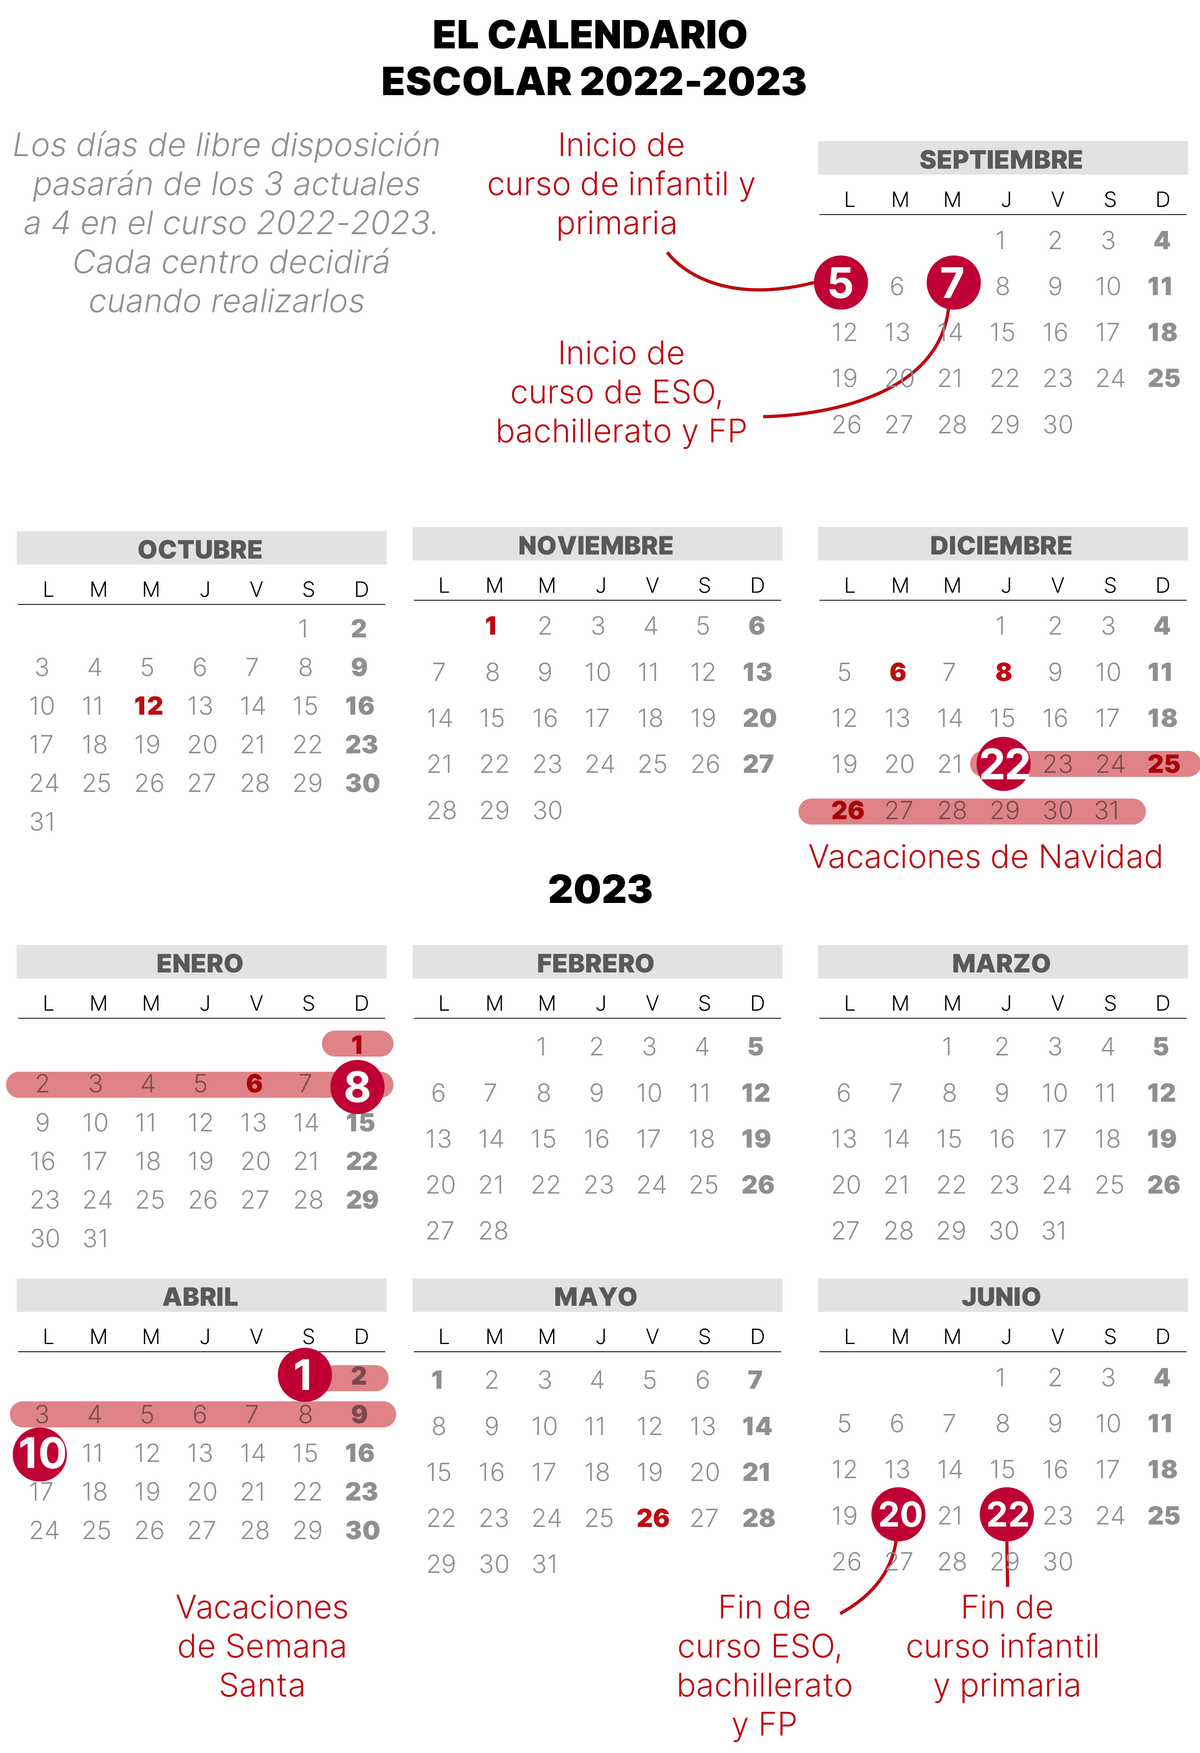 Calendario escolar 2022-2023 en Catalunya: estas son las fechas clave del curso